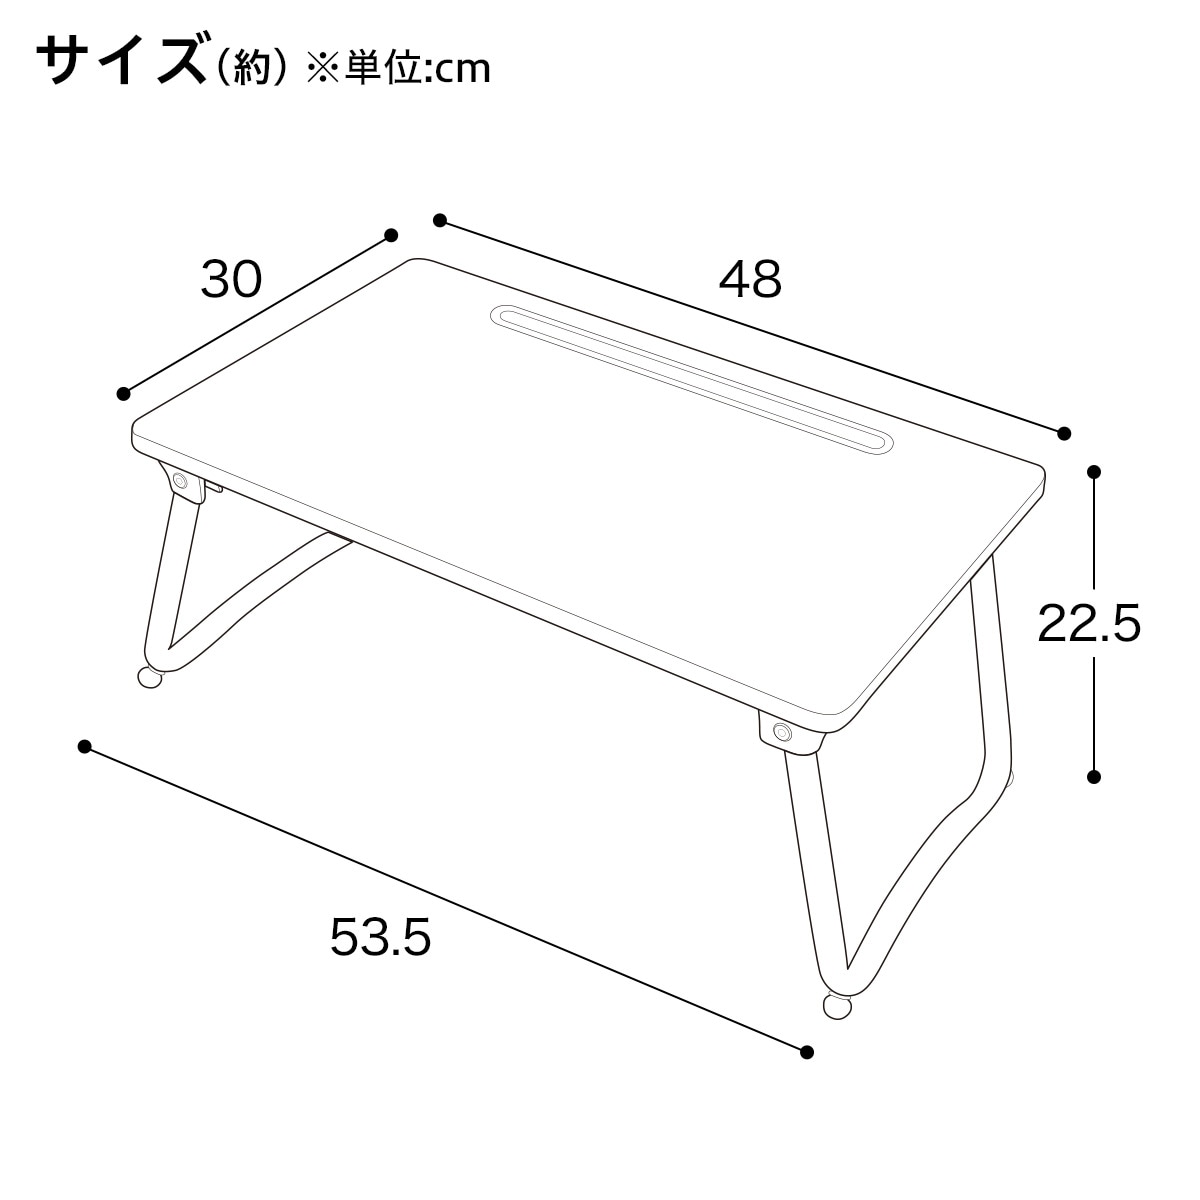  width 48cm. legs Mini table folding table (LX1 4830 white woshu)nitoli